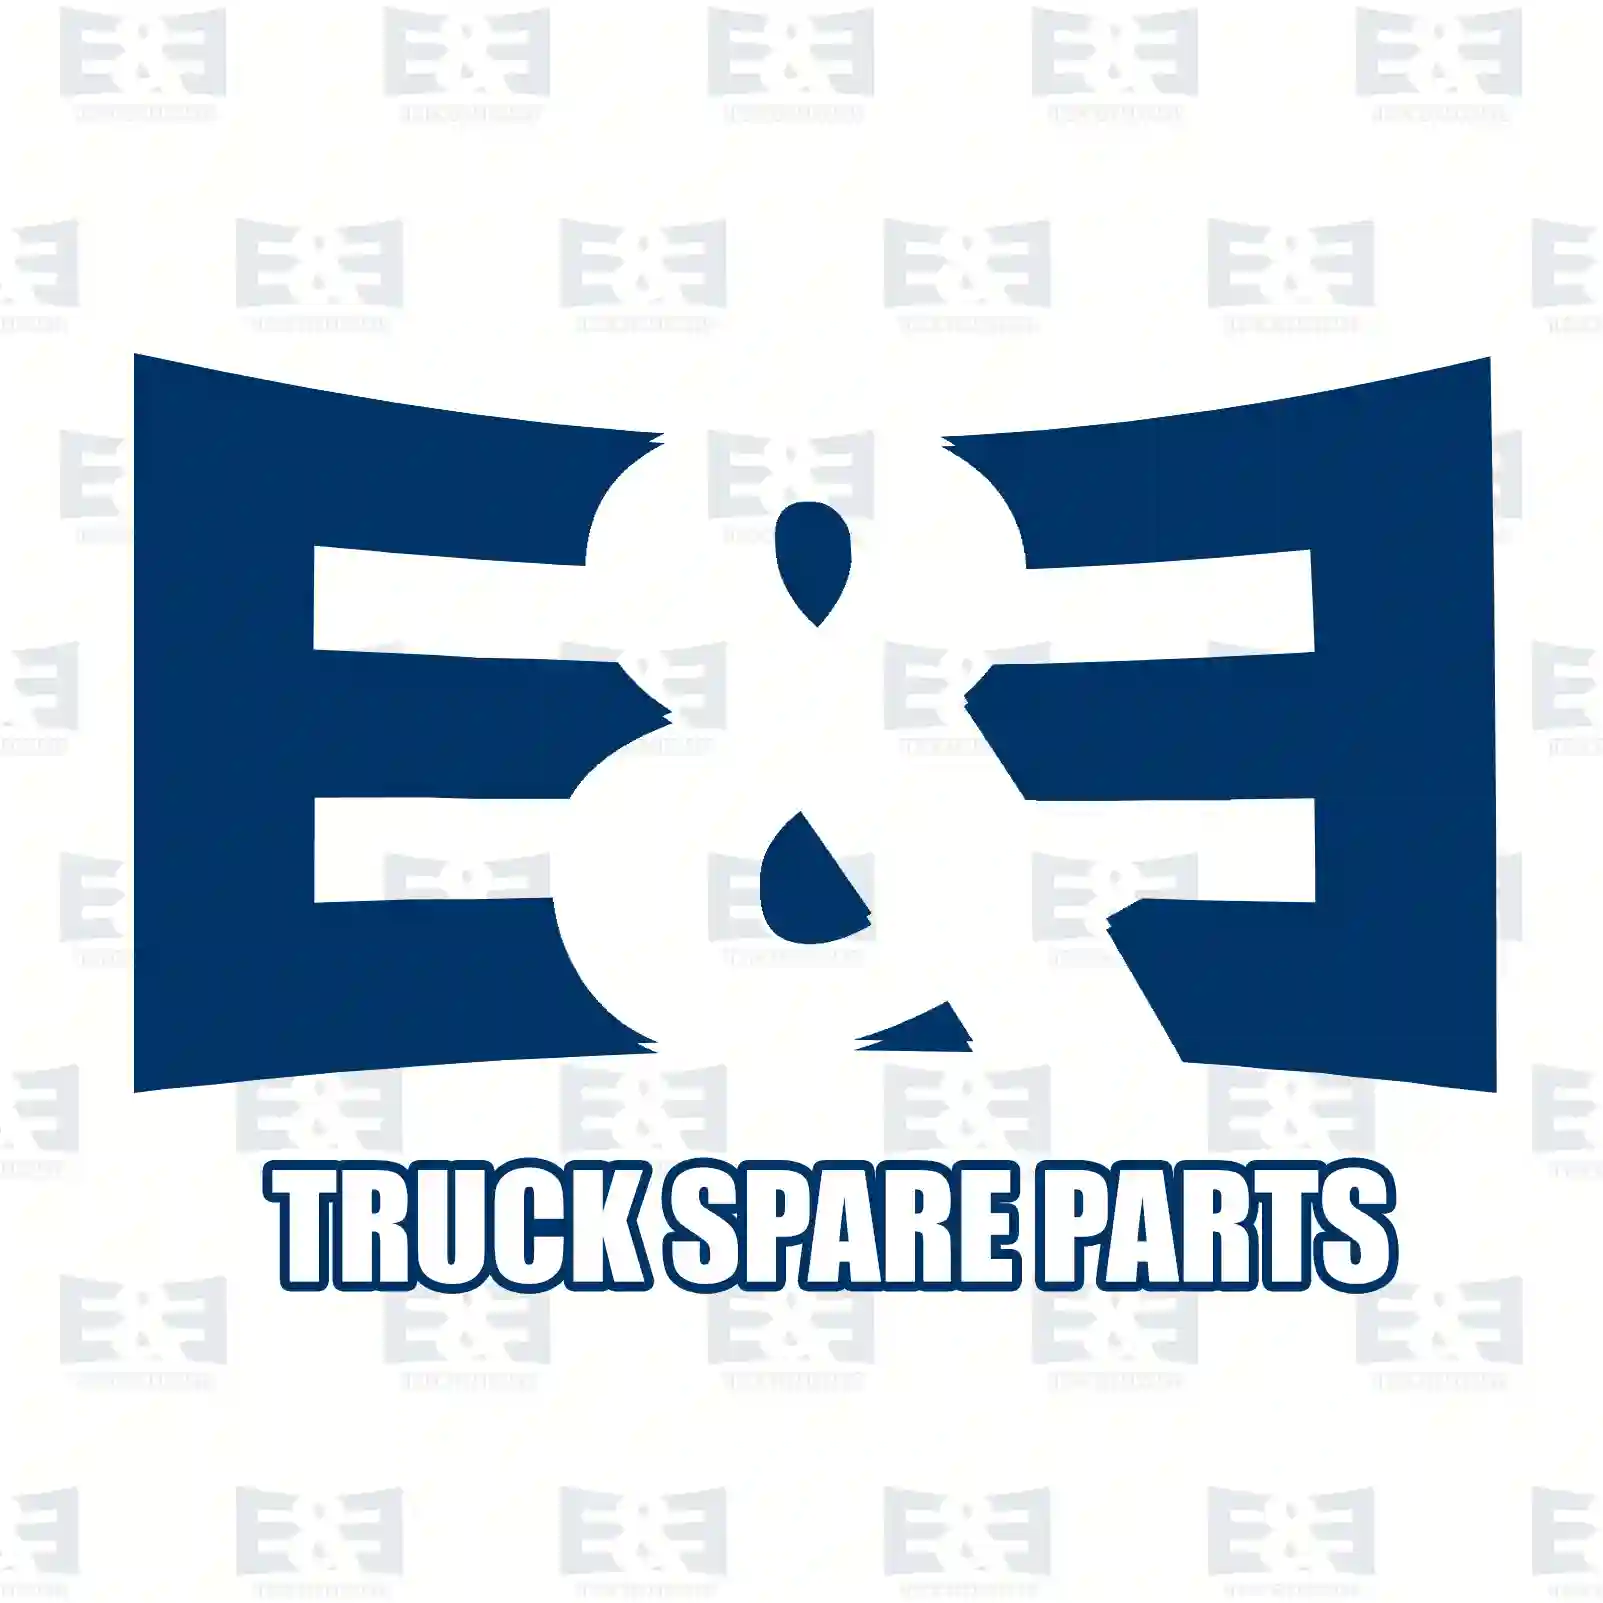 V-belt kit, 2E2202934, 02235176, 2235176, 4726920, 06580432135, 06580721351, 06580721352, 06580731351, 06580731352, 976494, ZG02372-0008 ||  2E2202934 E&E Truck Spare Parts | Truck Spare Parts, Auotomotive Spare Parts V-belt kit, 2E2202934, 02235176, 2235176, 4726920, 06580432135, 06580721351, 06580721352, 06580731351, 06580731352, 976494, ZG02372-0008 ||  2E2202934 E&E Truck Spare Parts | Truck Spare Parts, Auotomotive Spare Parts